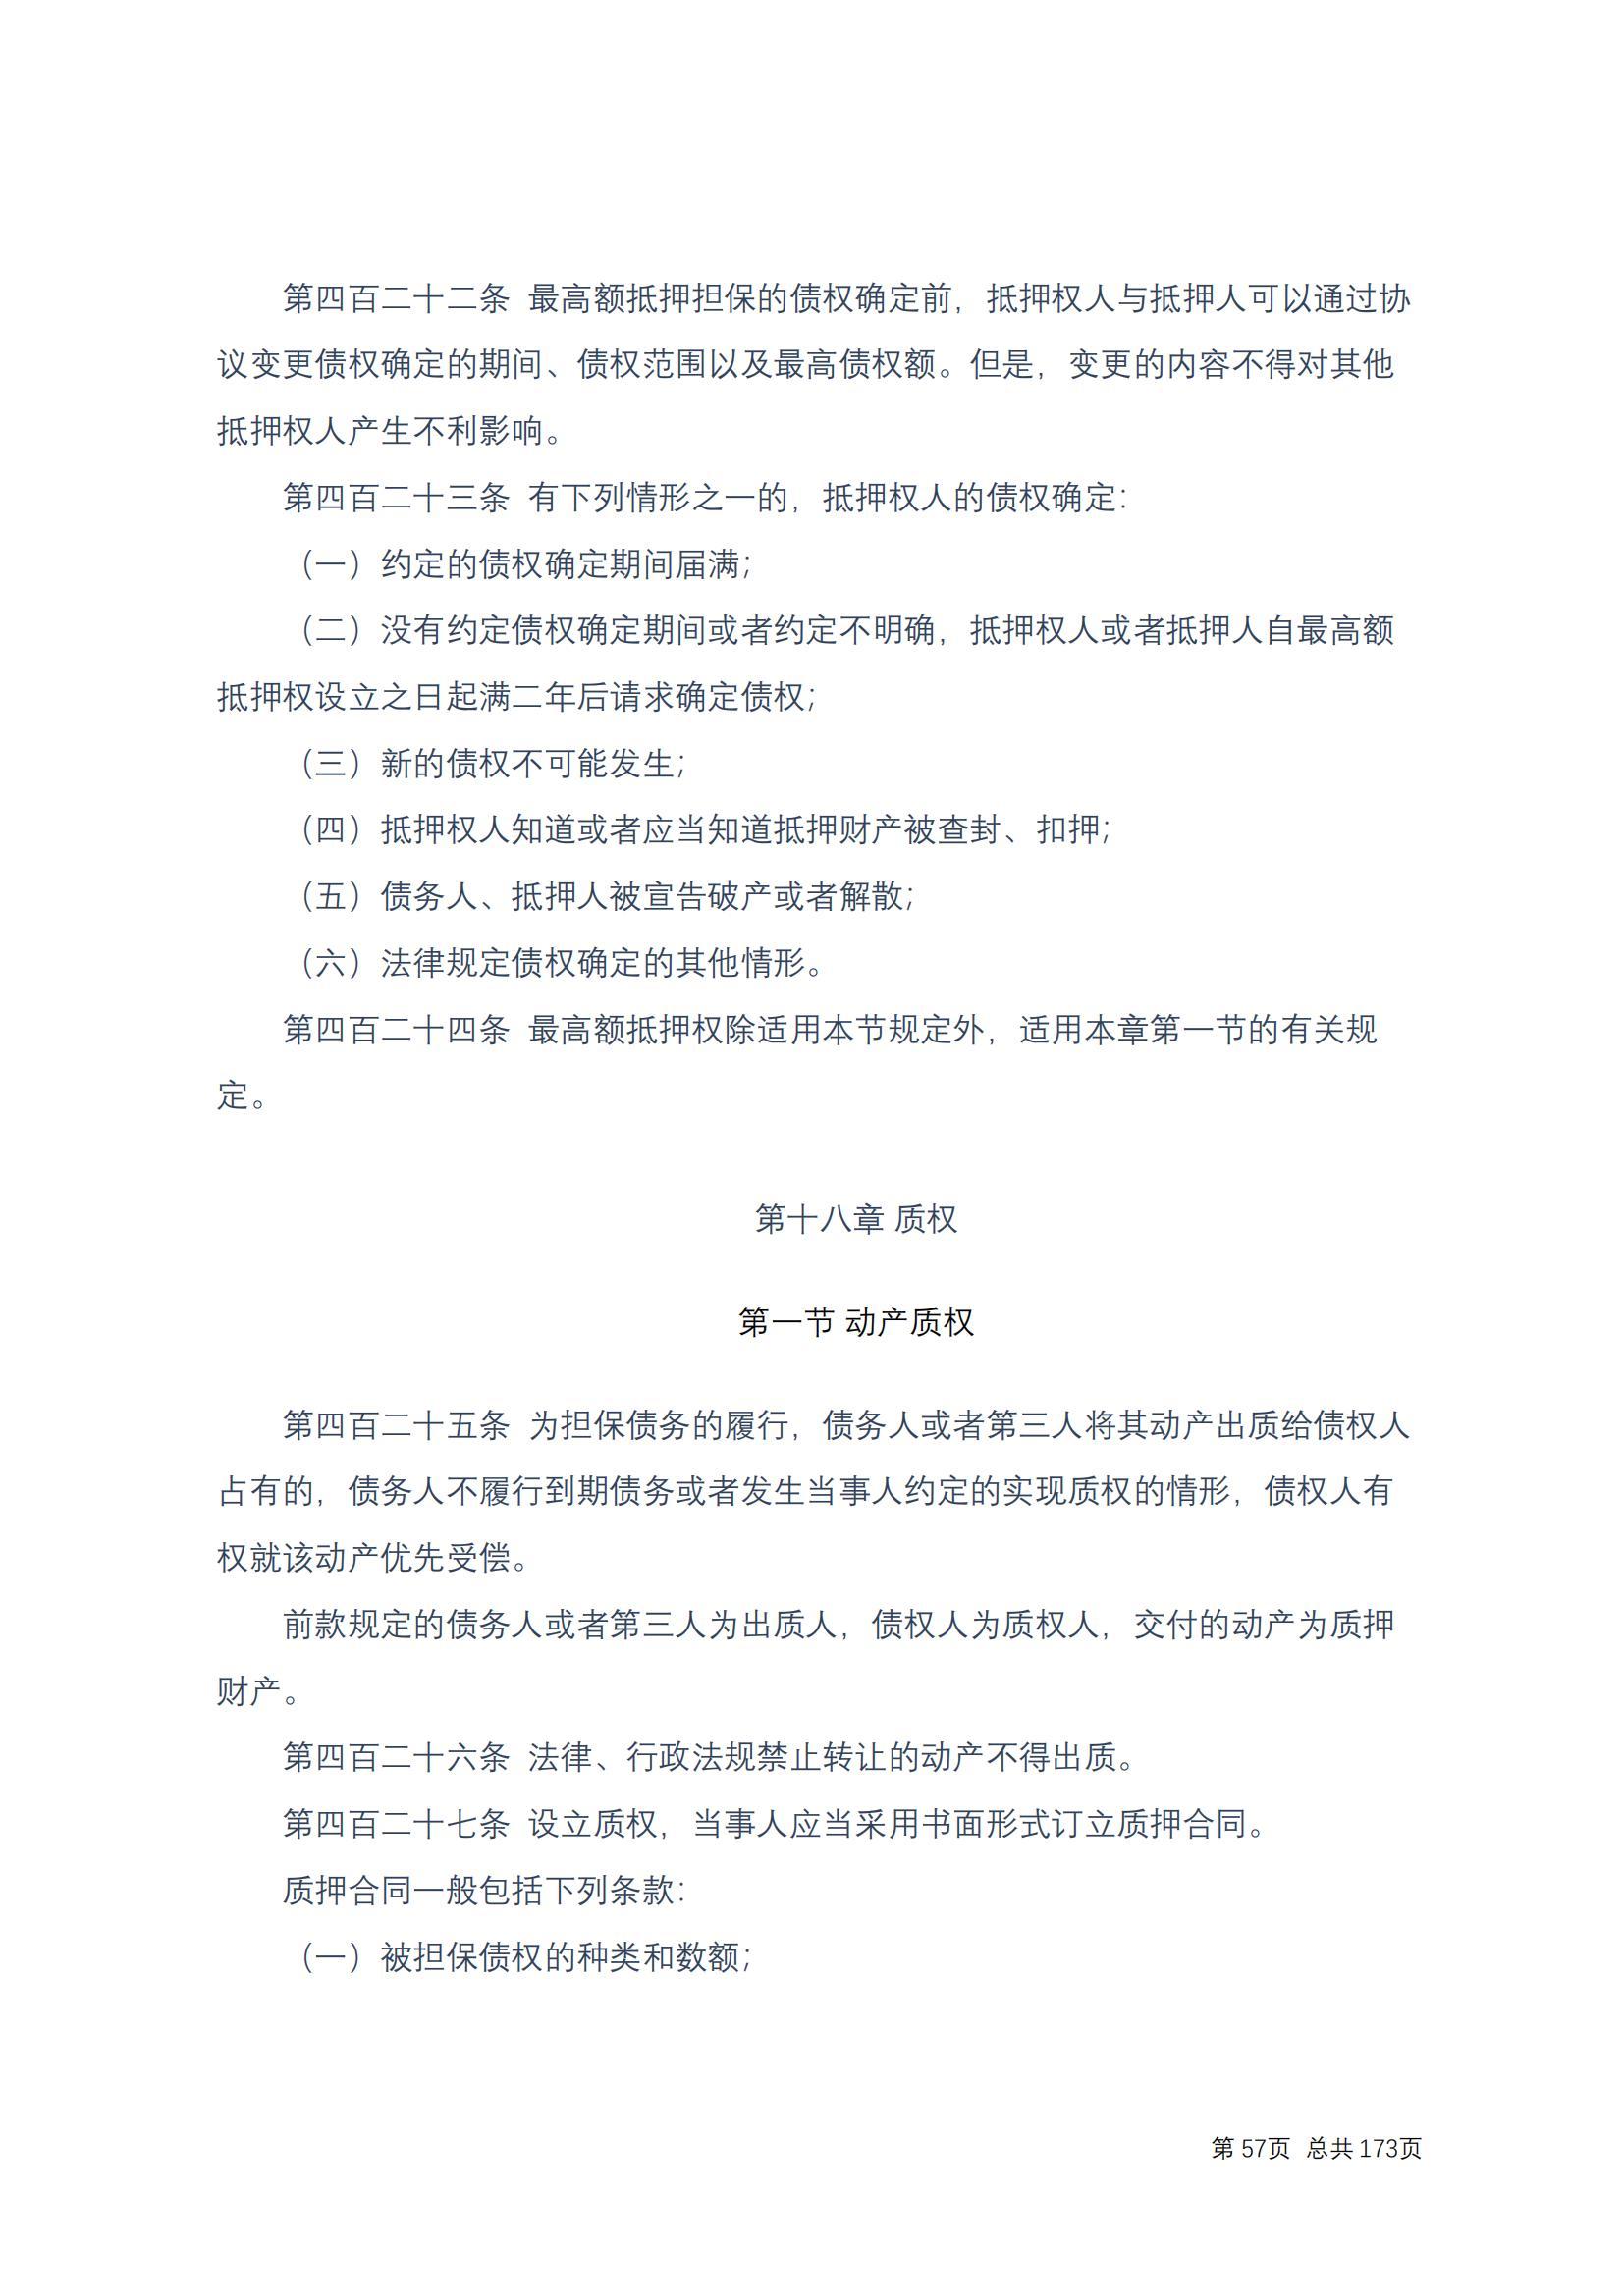 中华人民共和国民法典 修改过_56